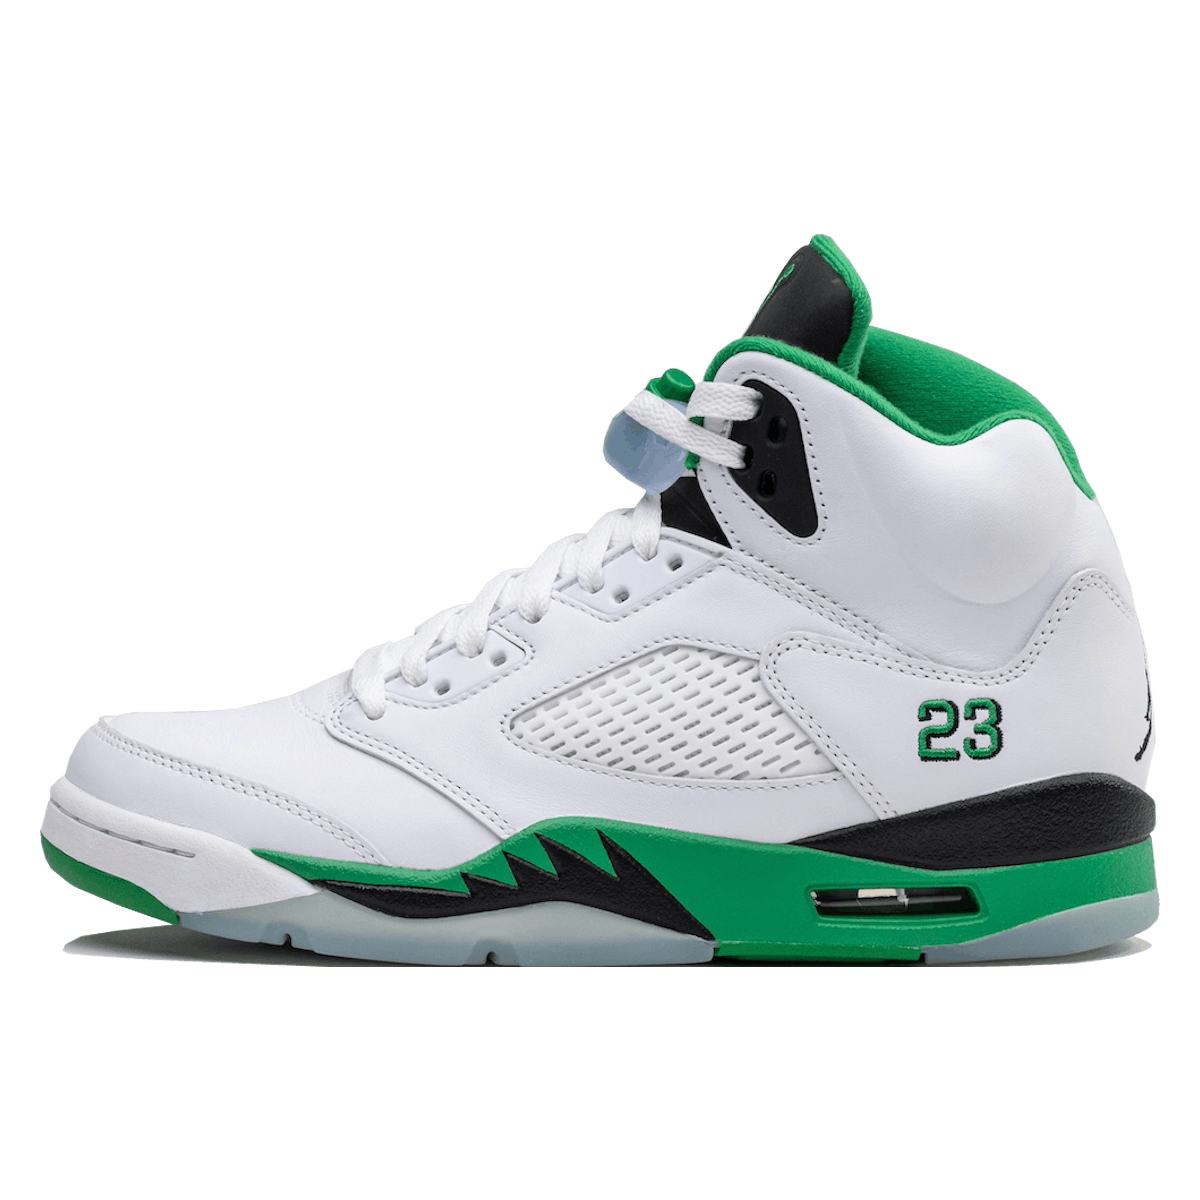 Air Jordan 5 Retro Wmns "Lucky Green"